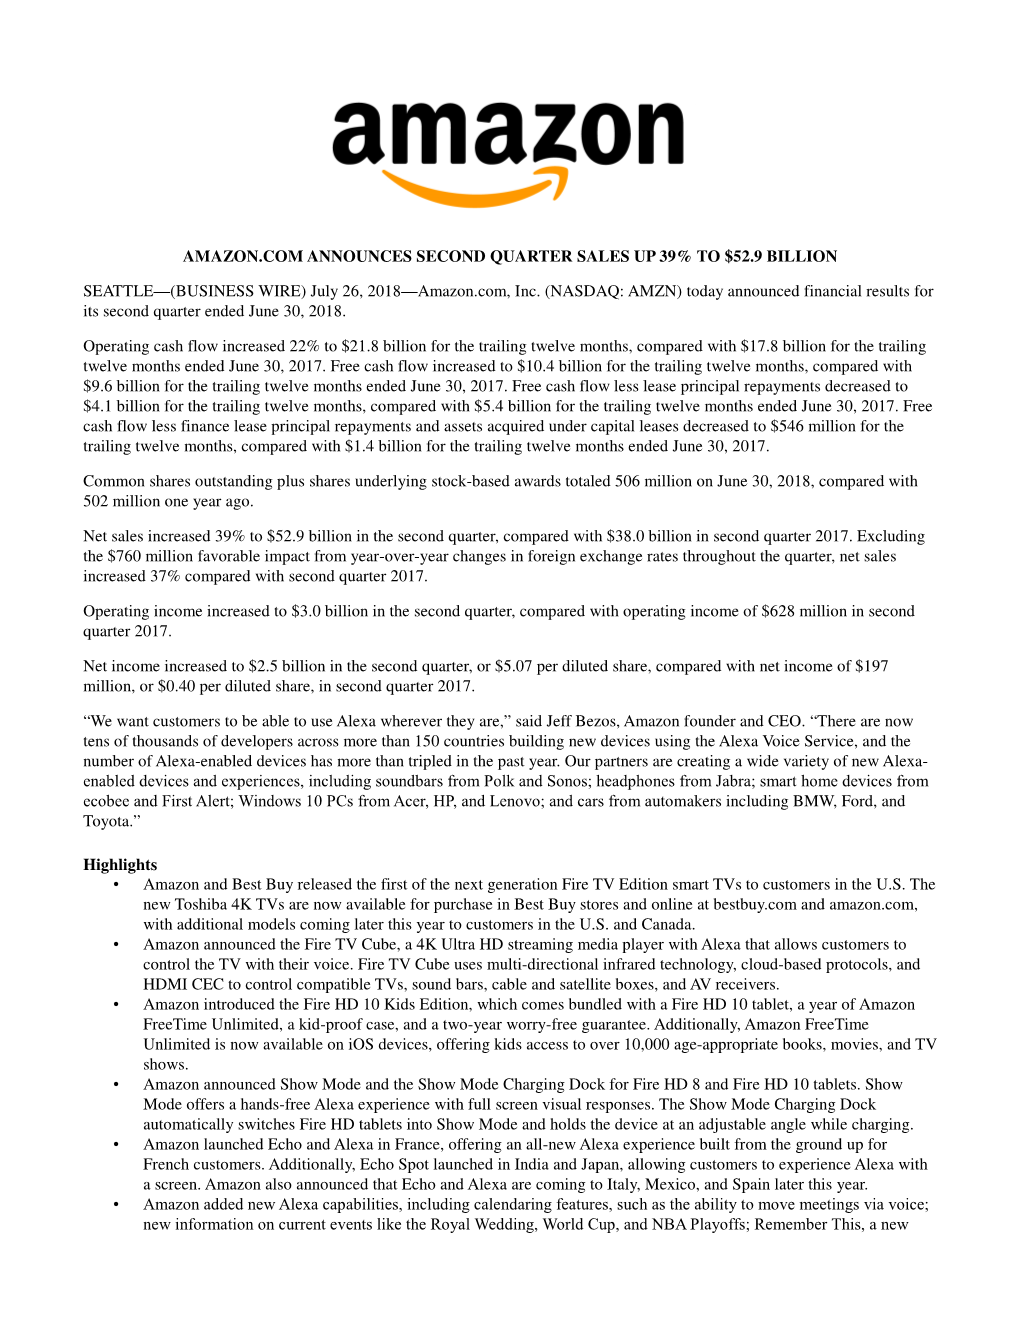 Amazon.Com Announces Second Quarter Sales up 39% to $52.9 Billion